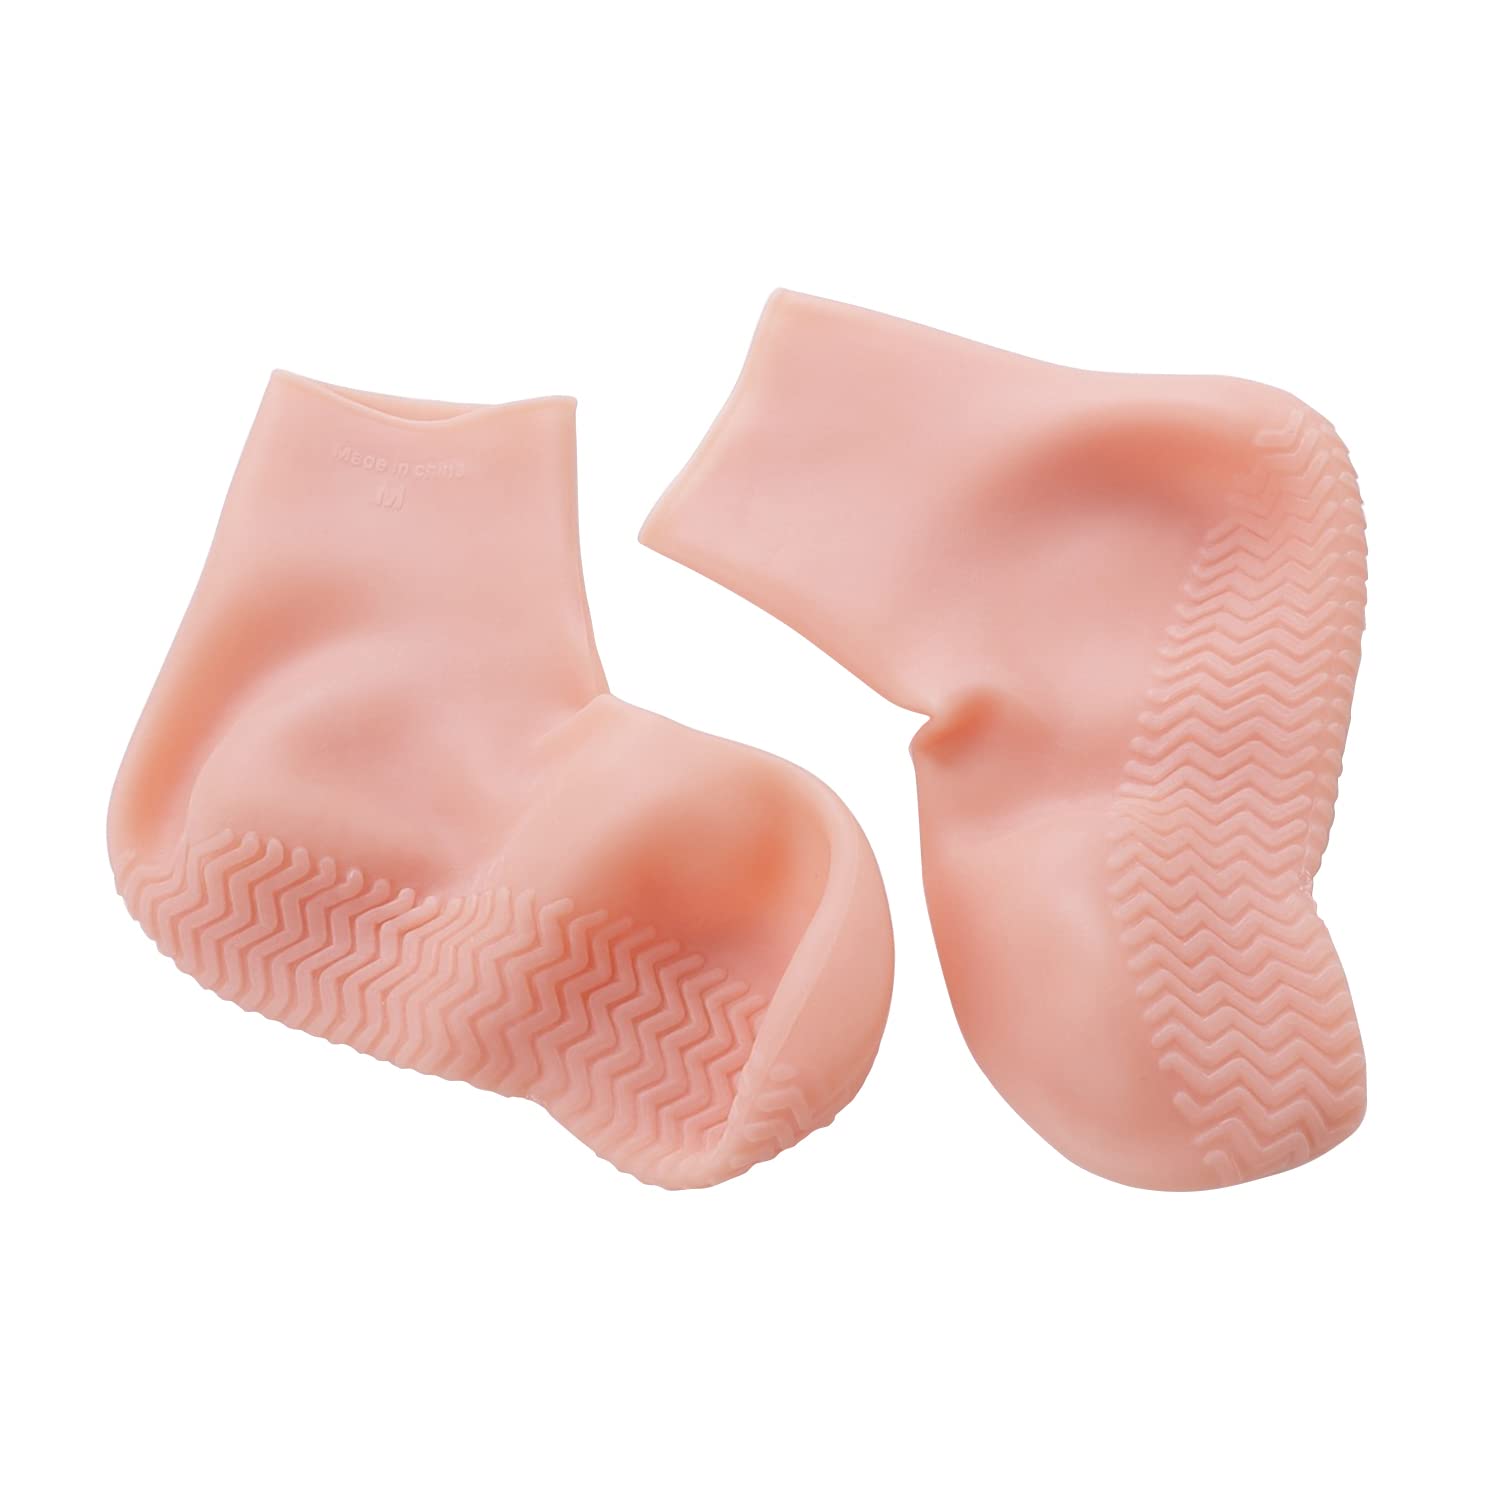 Moisturizing Socks - Silicone Spa Gel Lotion Moisture Socks